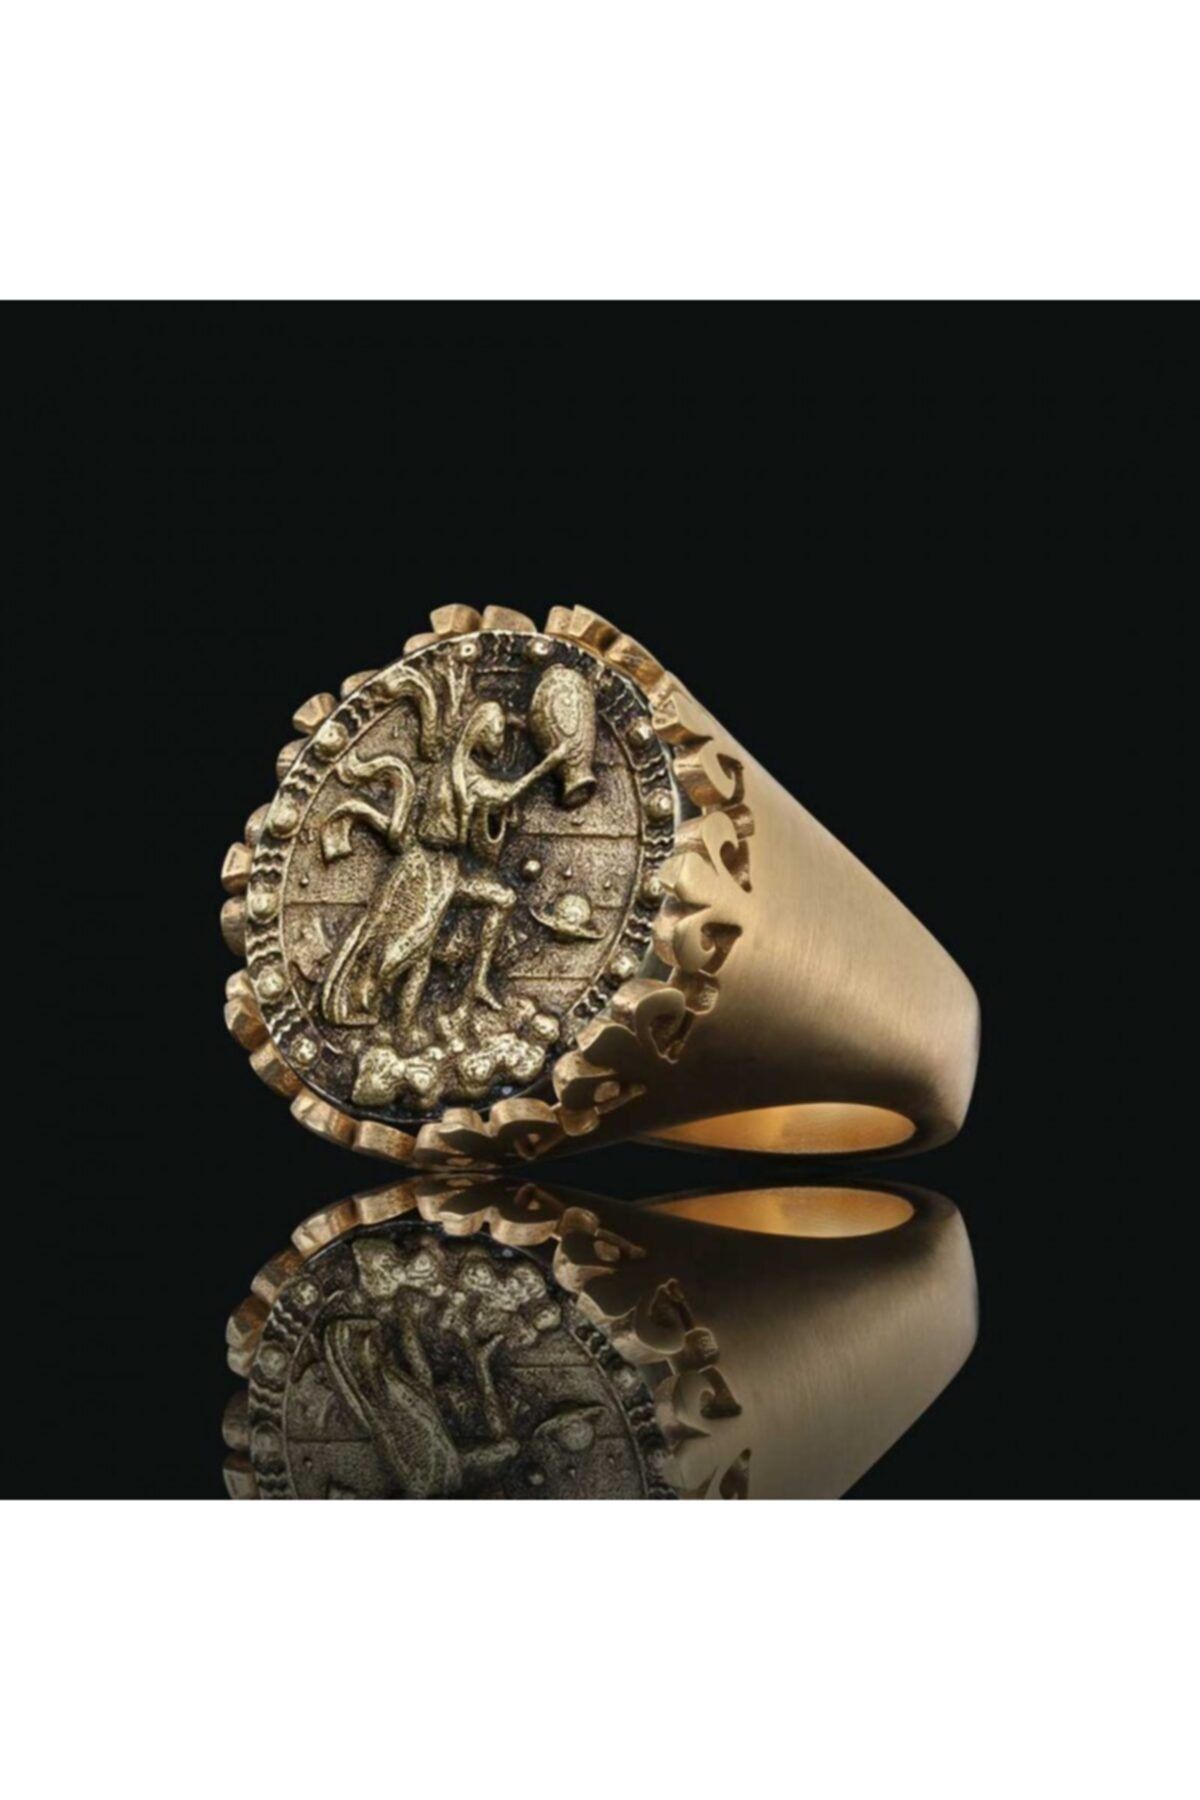 ELMAS İŞ Kova Burcu Özel Tasarım 925 Ayar Gümüş Üzeri Altın Kaplama Koleksiyon Yüzük